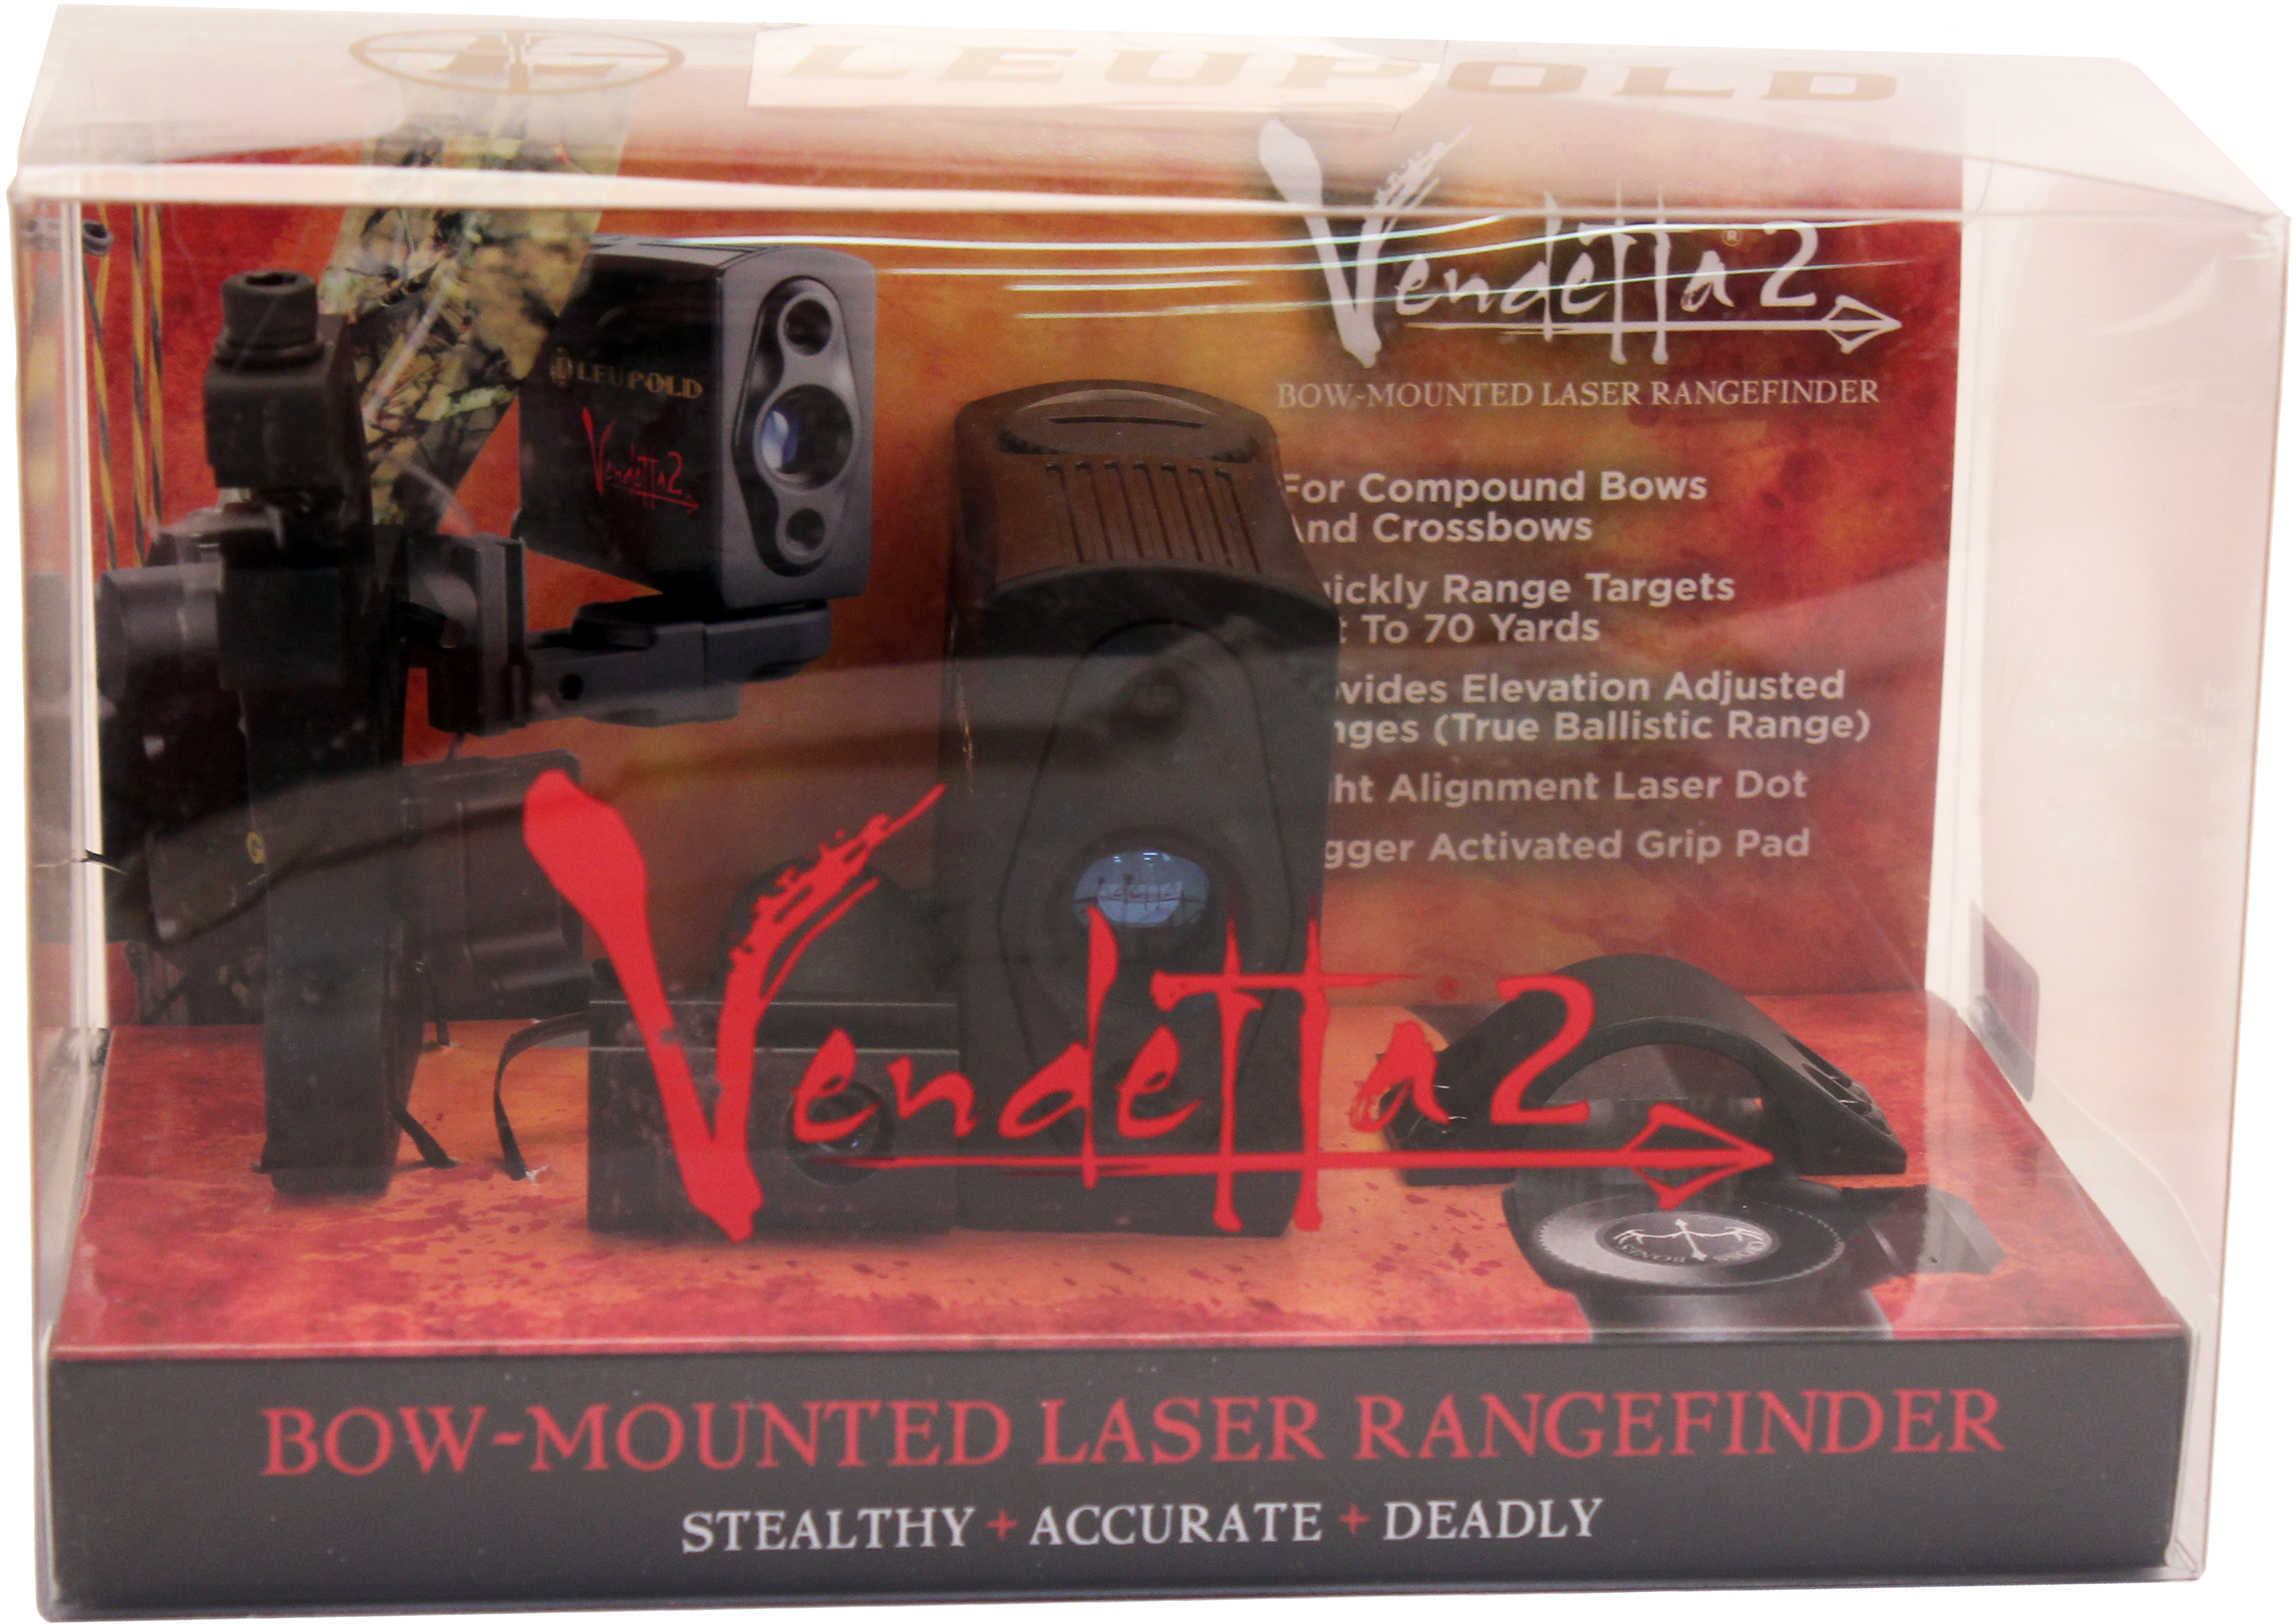 Leupold 170323 Vendetta 2 Bow-Mounted Laser Rangefinder 10 yds-75 yds Black